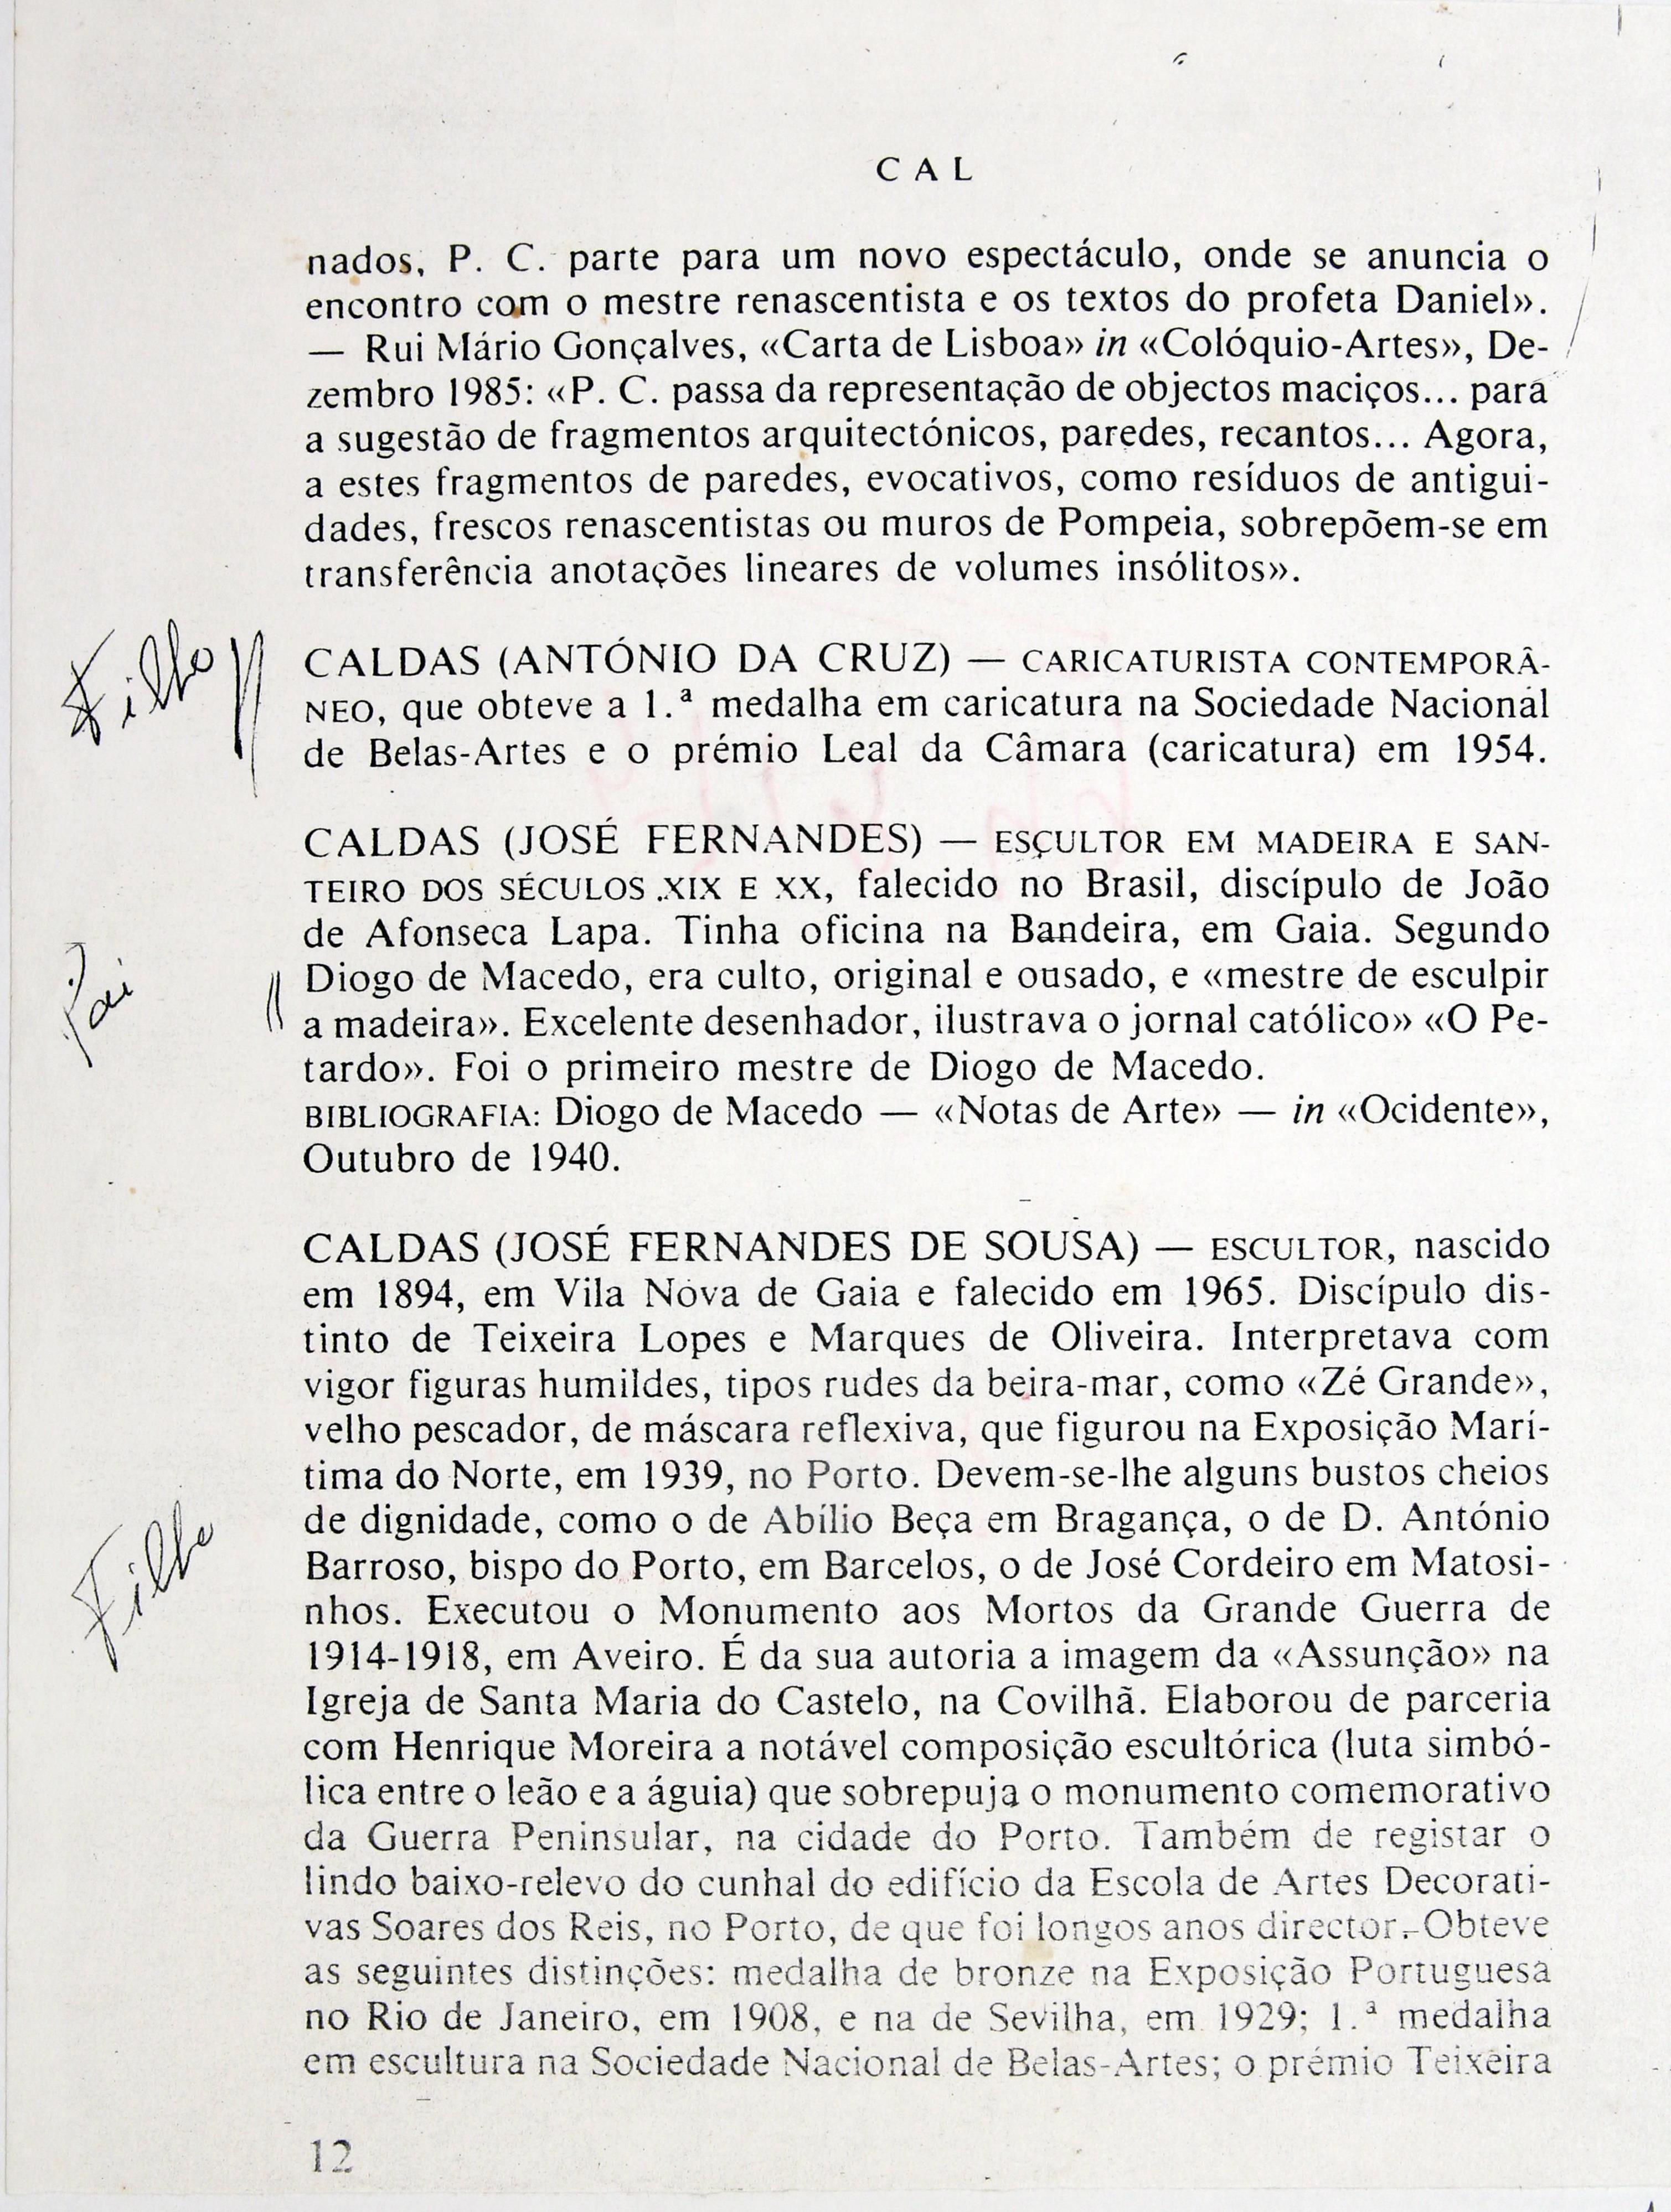 Cruz Caldas (1) : 1897-1928 : «Dicionário de pintores e escultores portugueses ou que trabalharam em Portugal» : Caldas ()